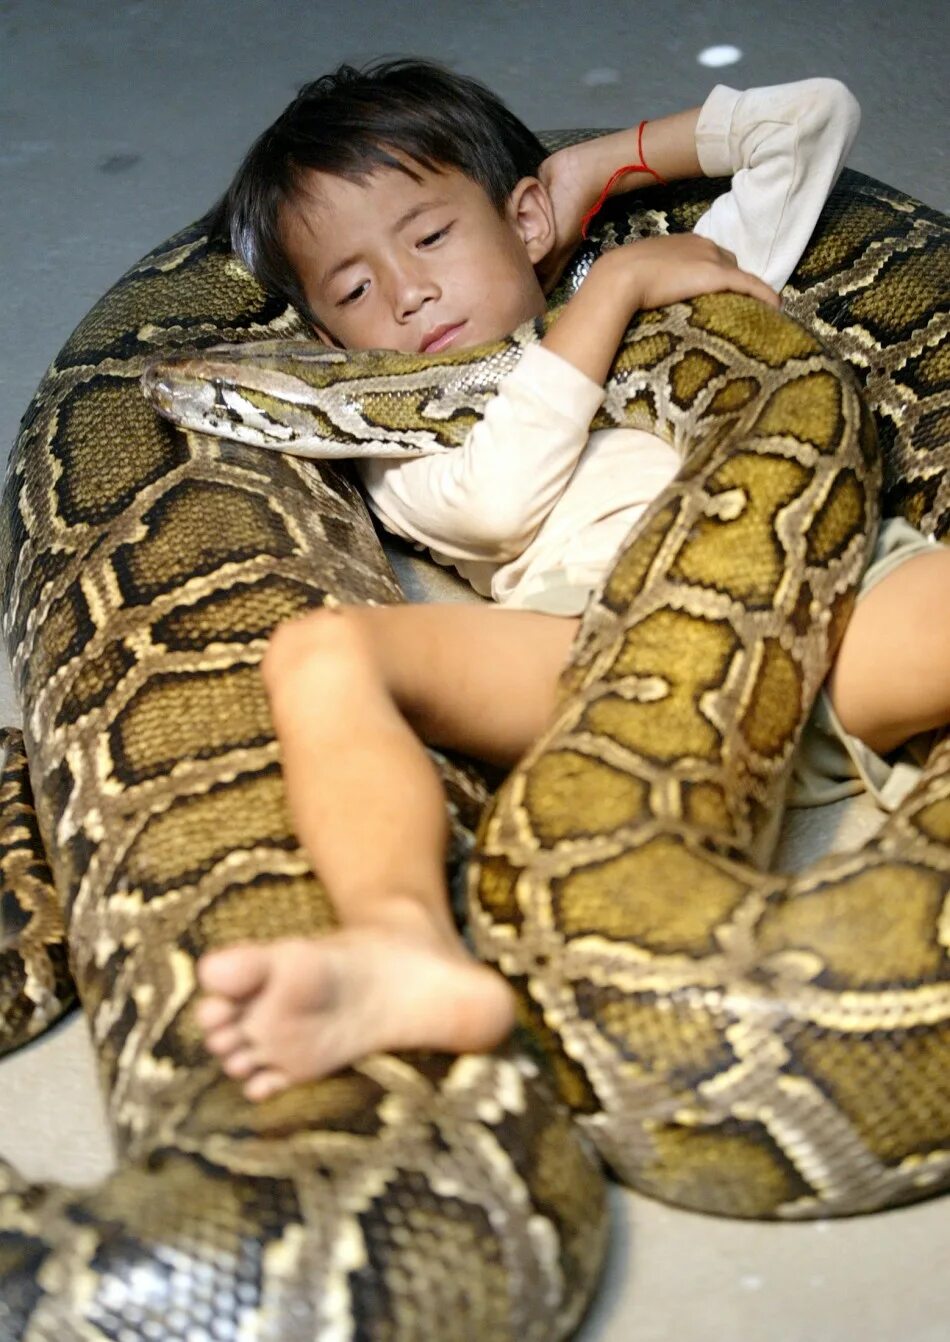 Ребенок держит змею